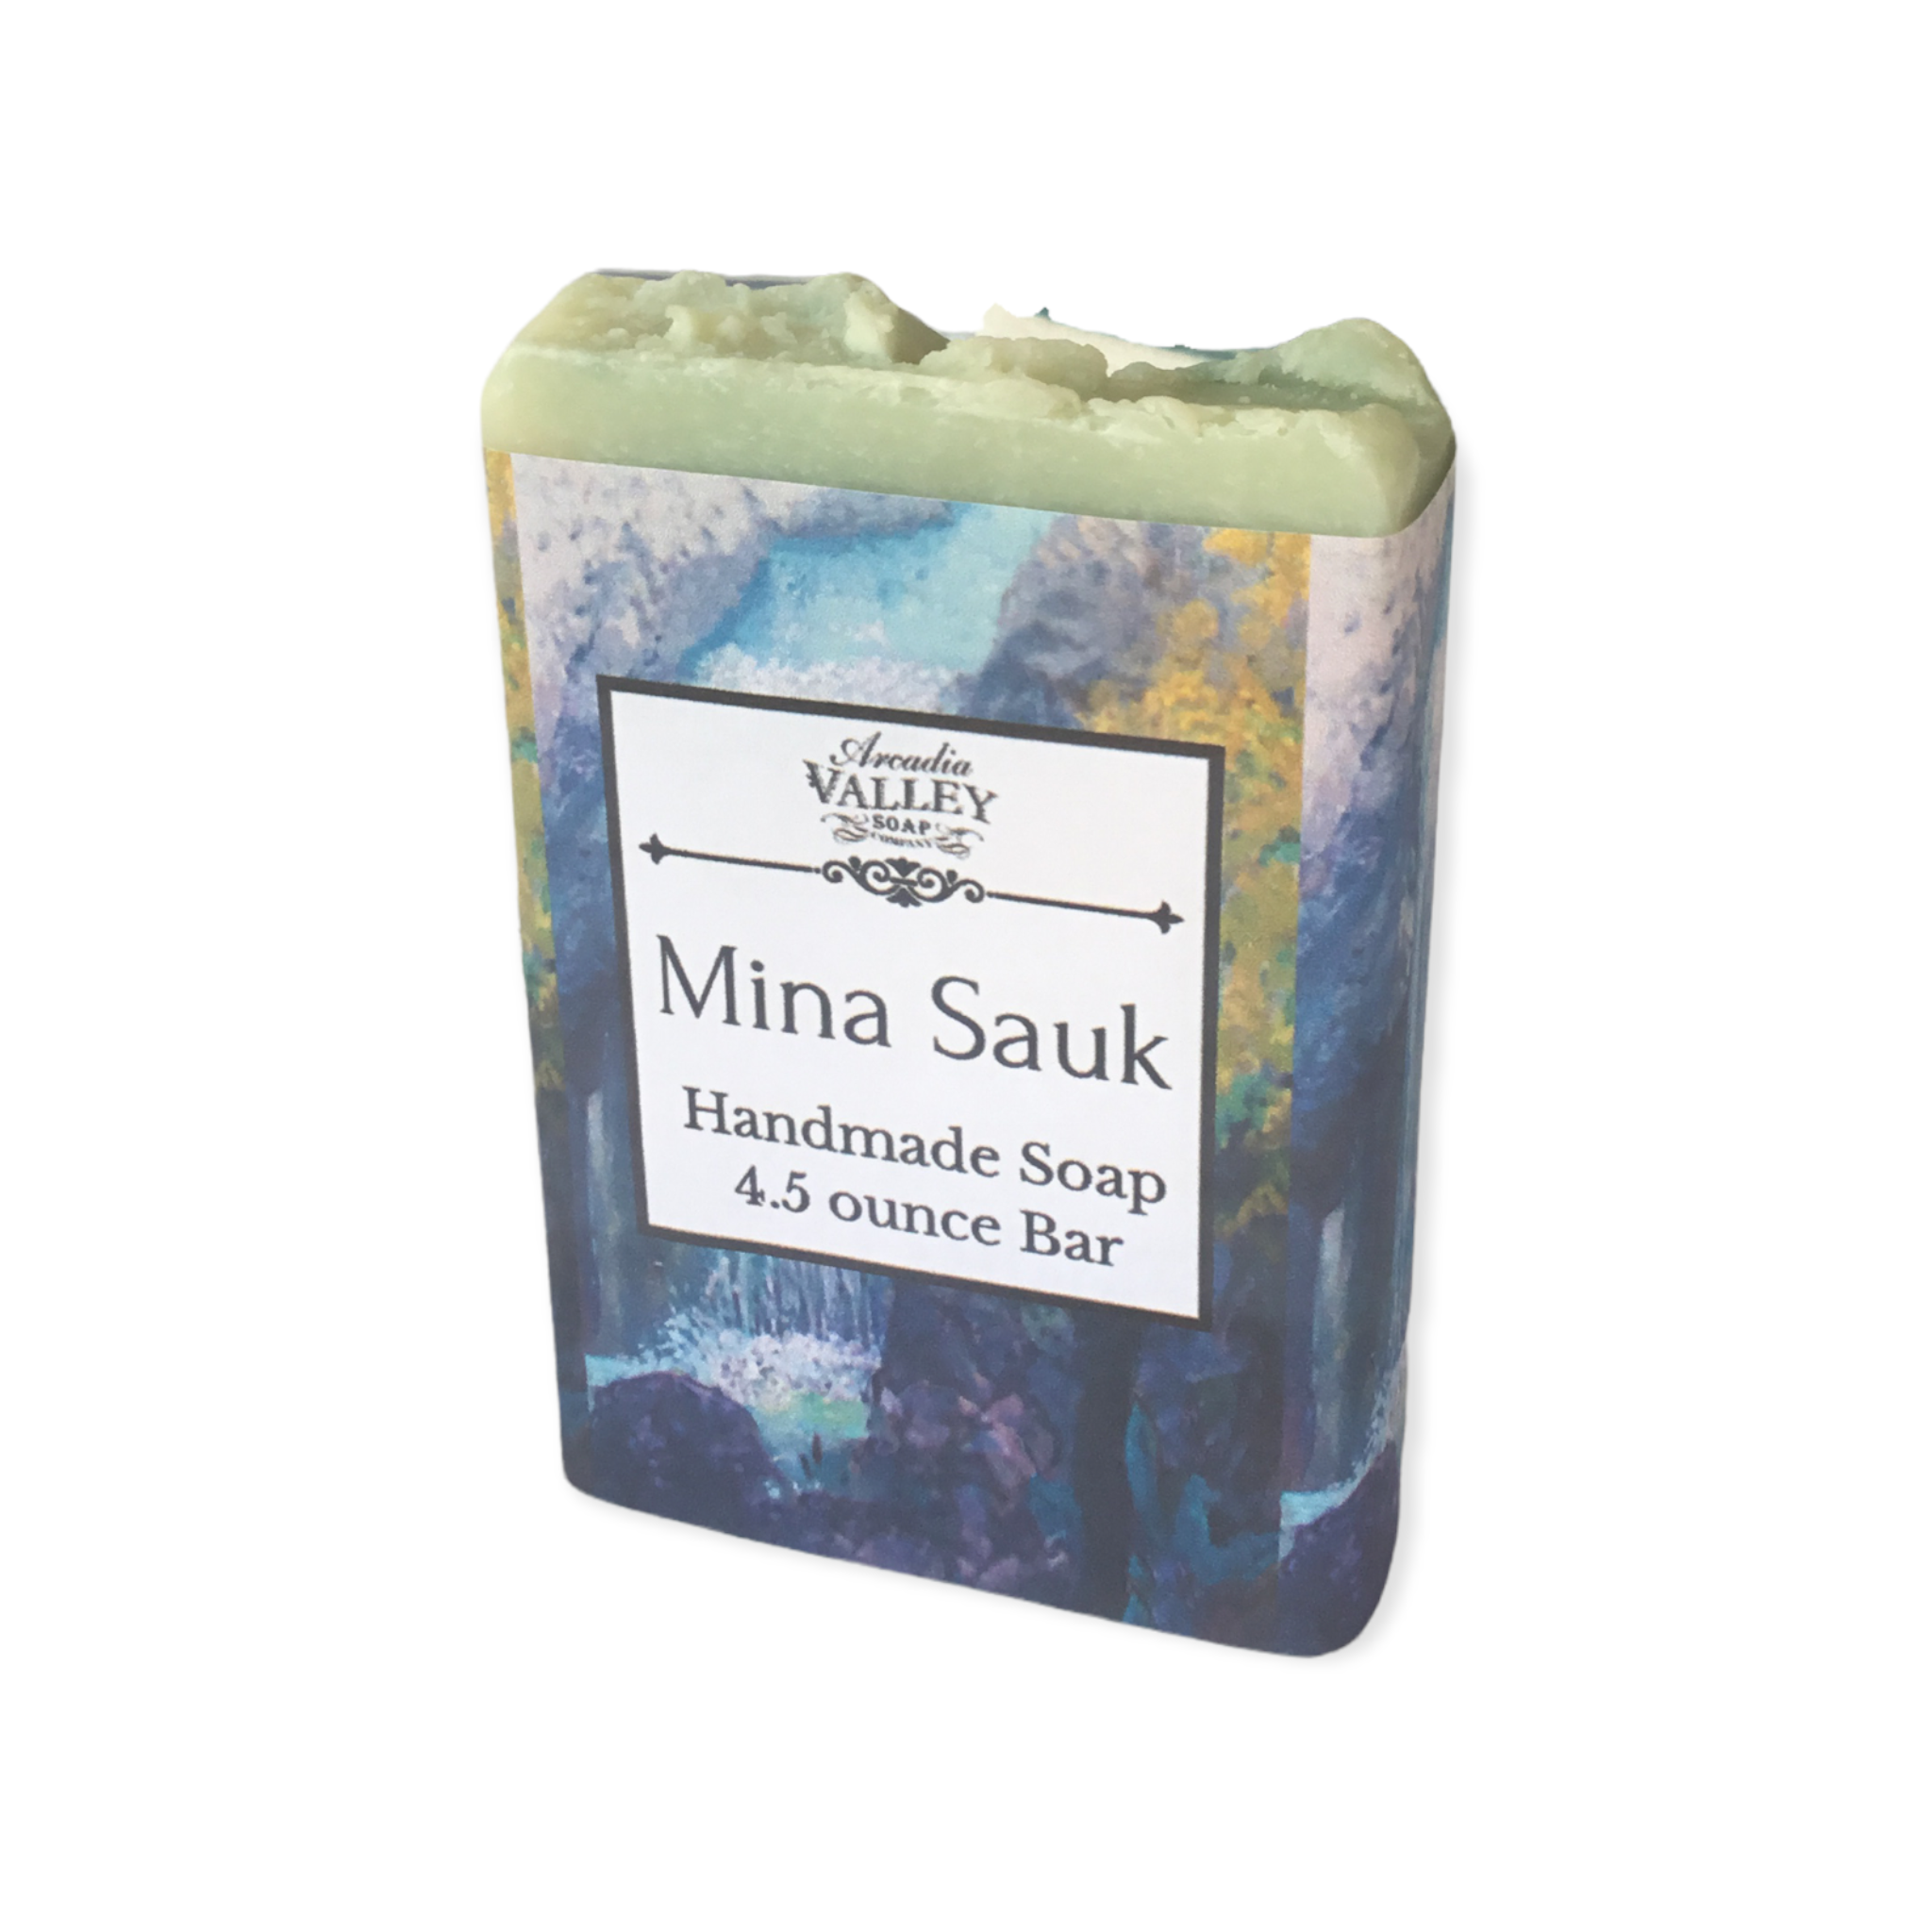 Mina Sauk Handmade Soap